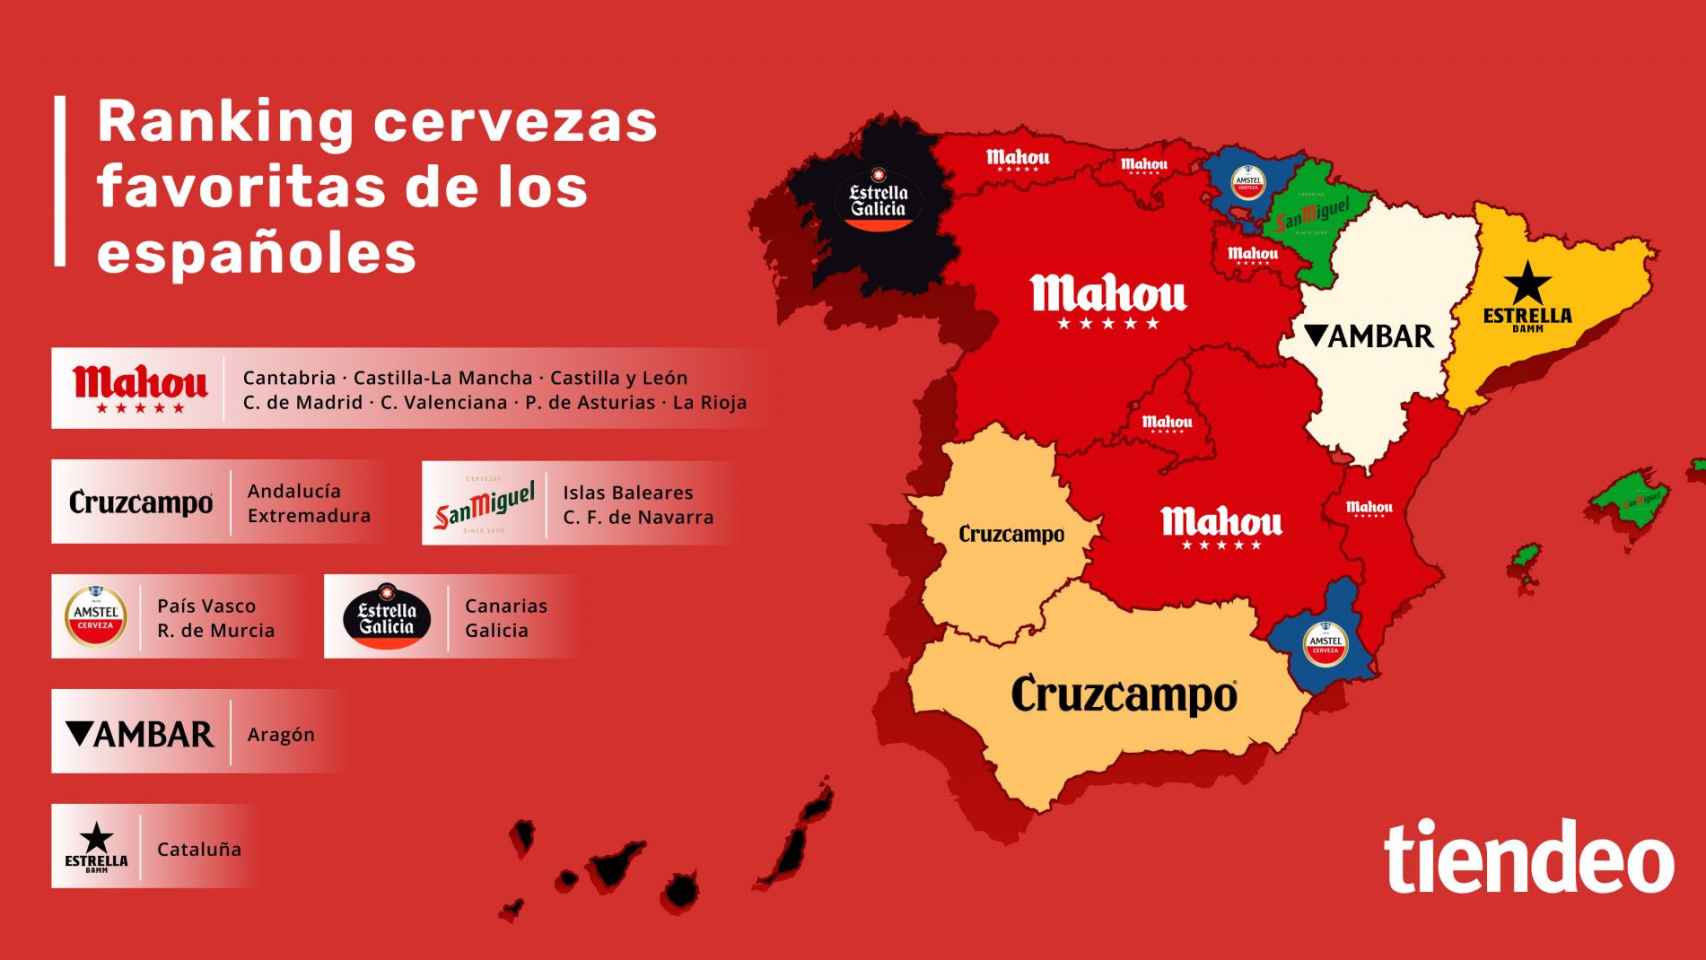 Mapa de España con las cervezas favoritas por comunidades